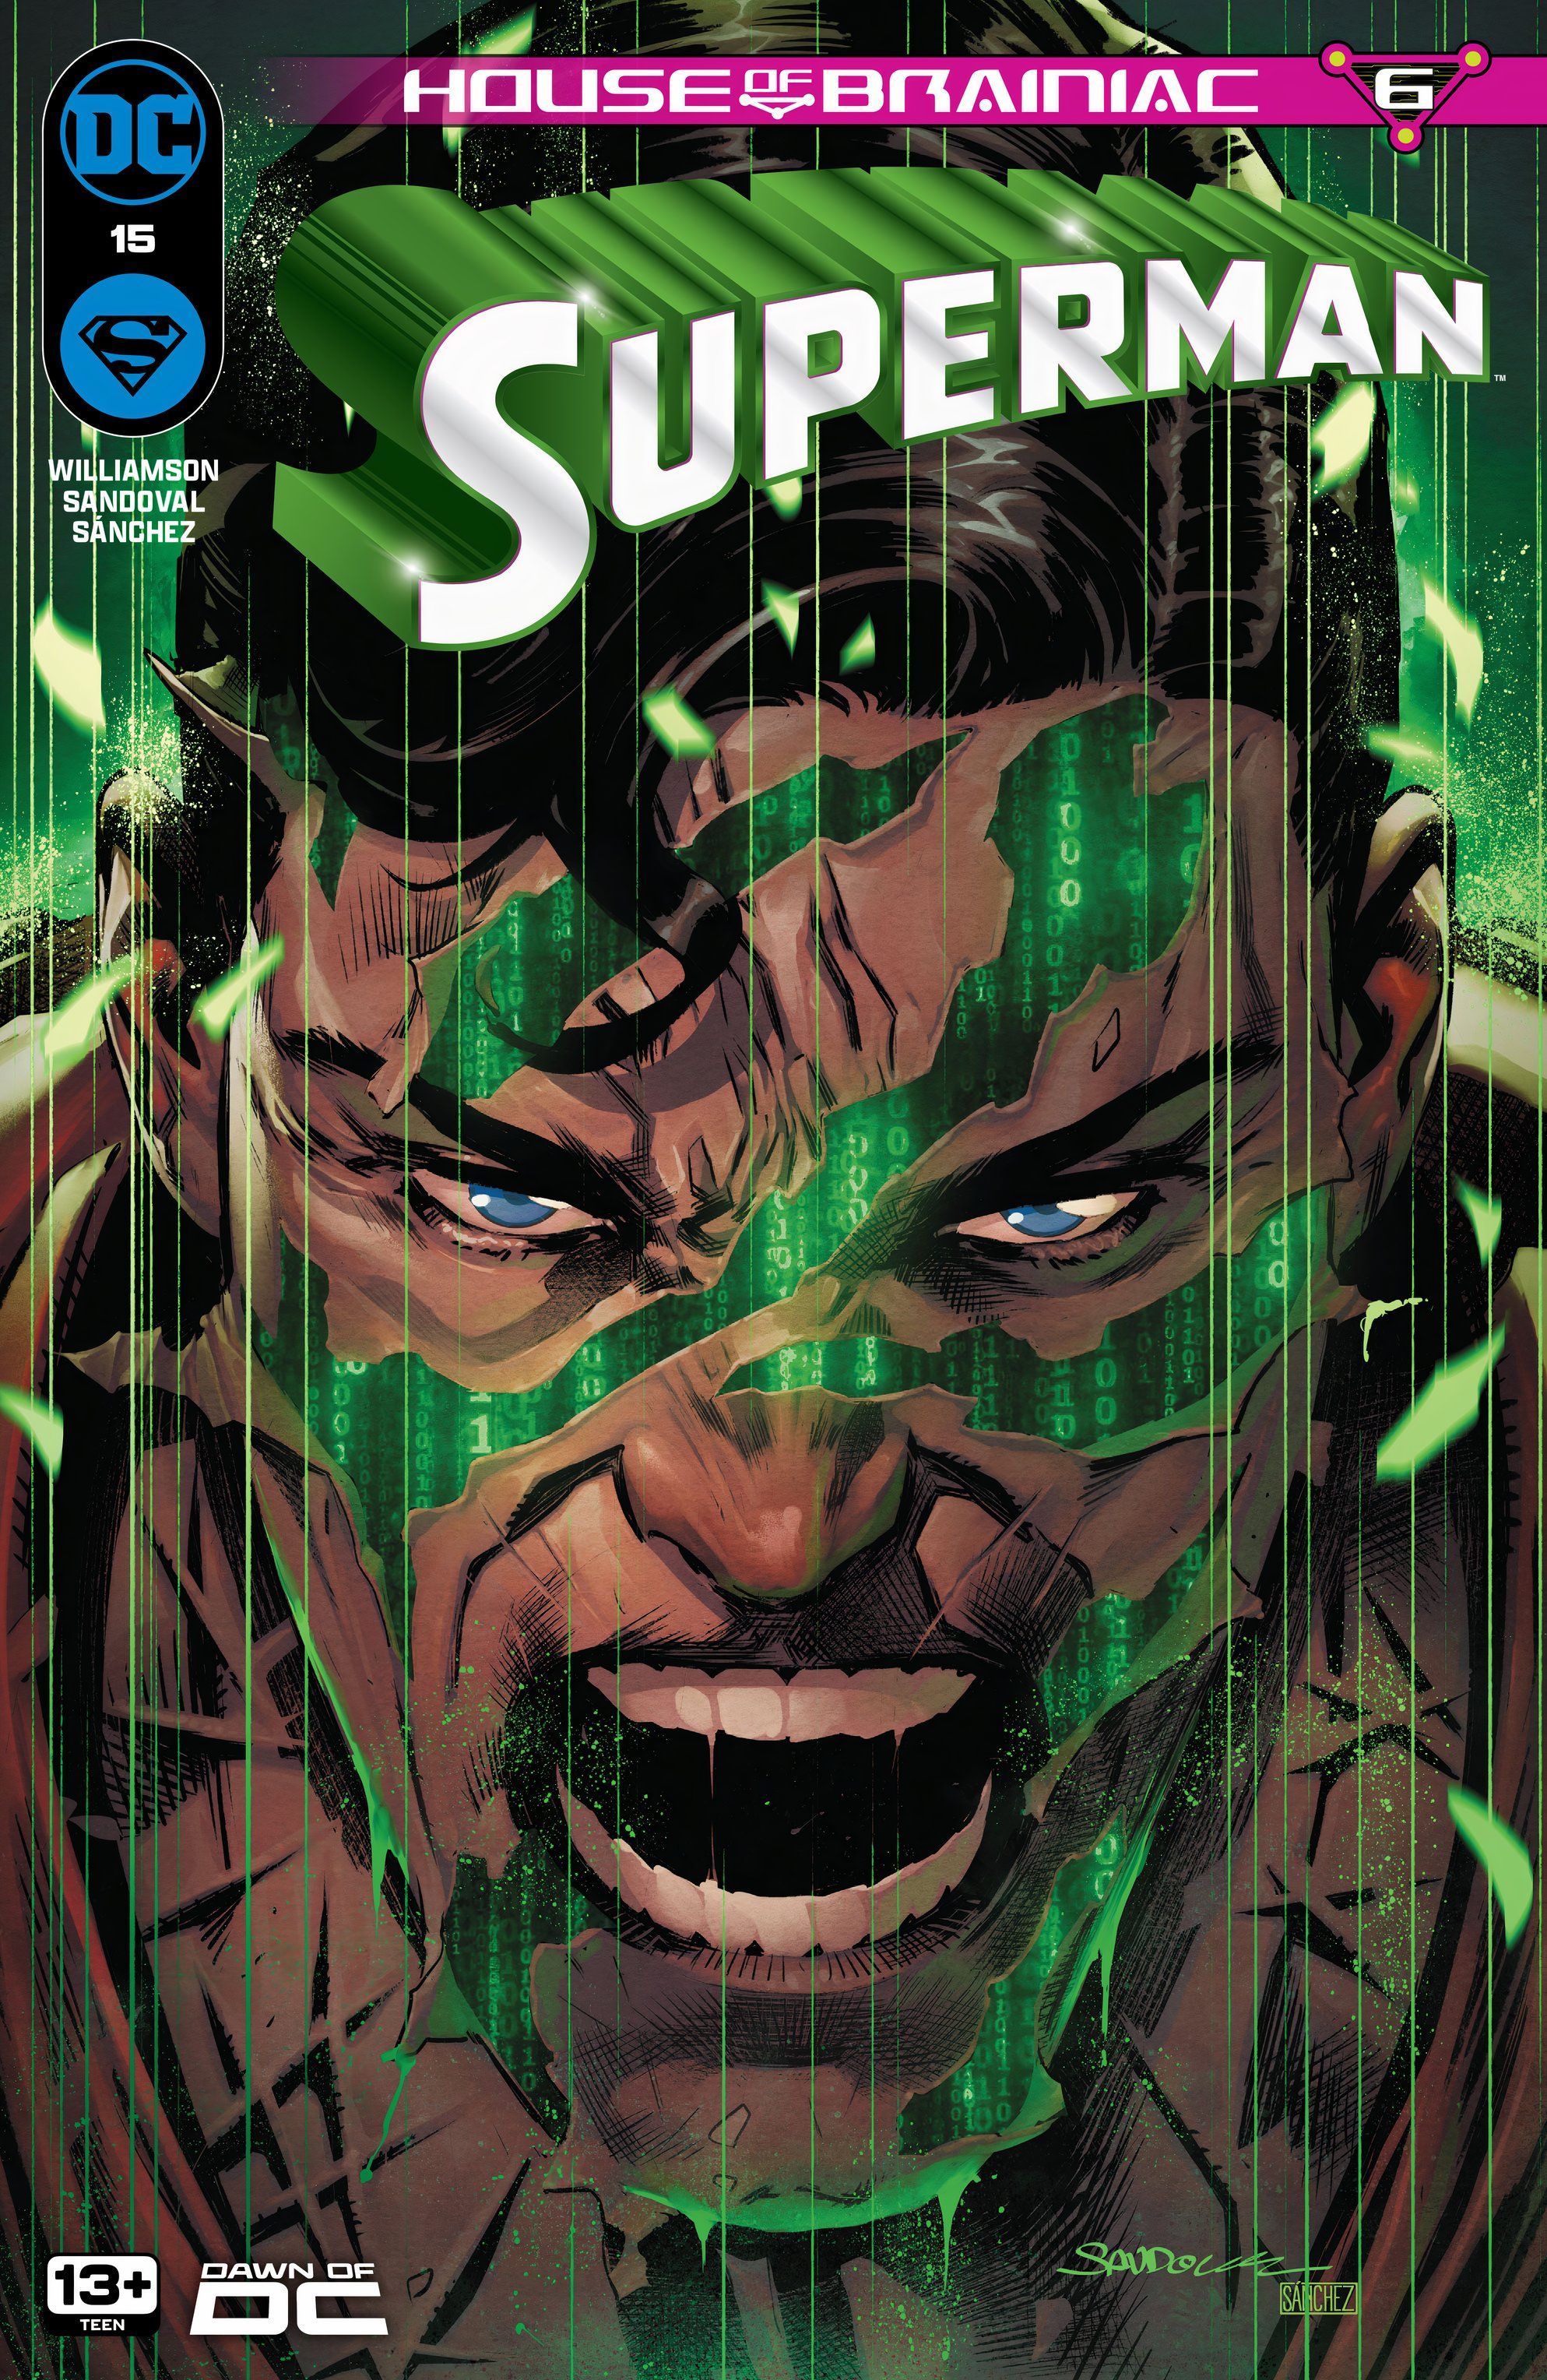 Capa principal do Superman 15: Superman corrompido pelas cicatrizes verdes de Brainiac.